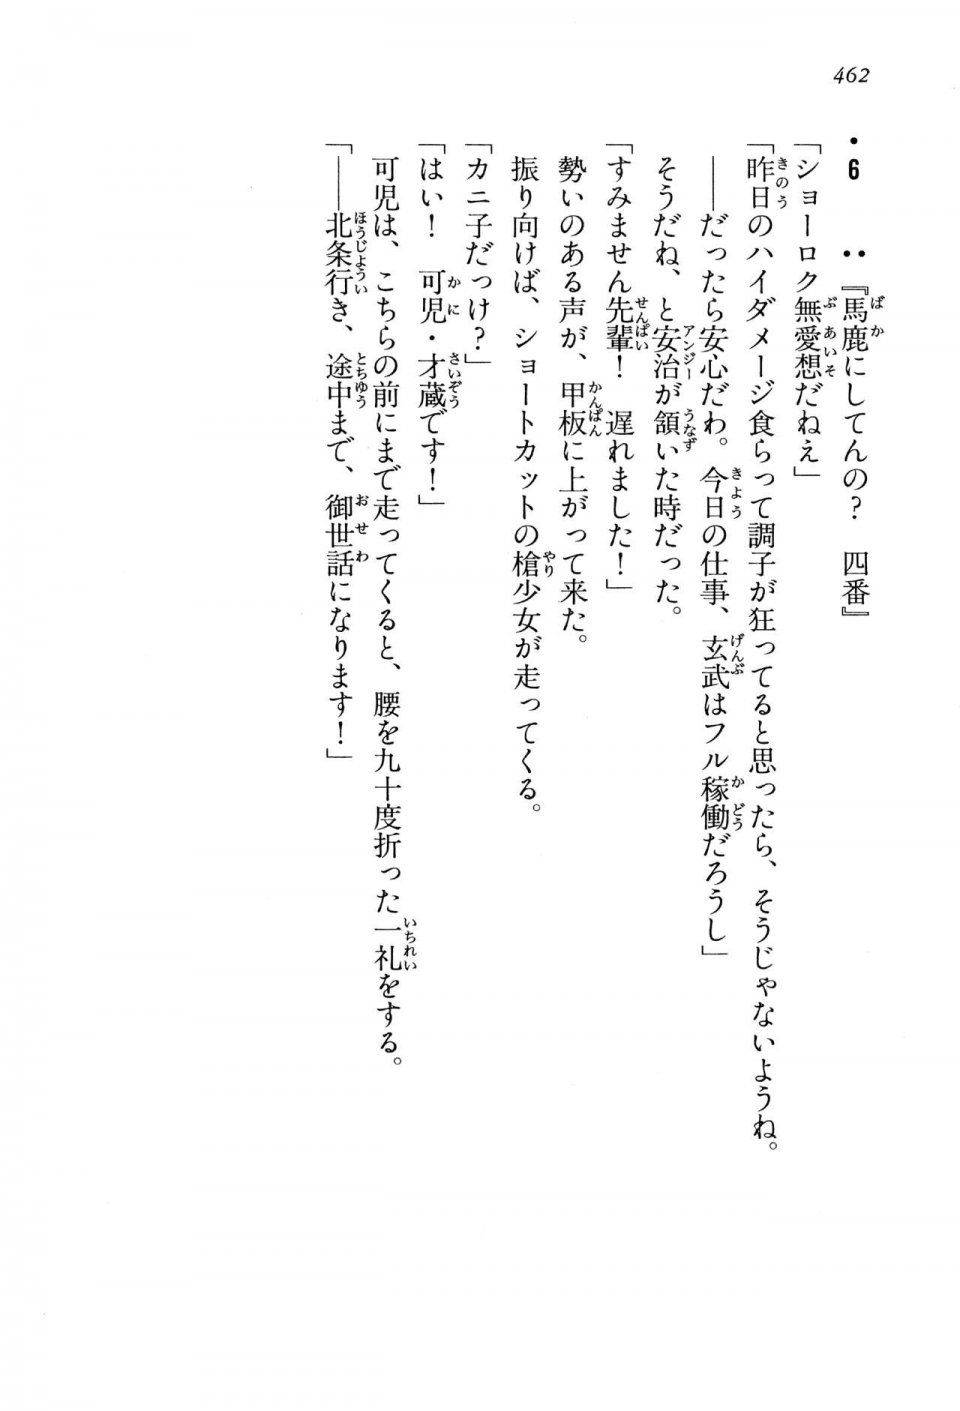 Kyoukai Senjou no Horizon LN Vol 13(6A) - Photo #462